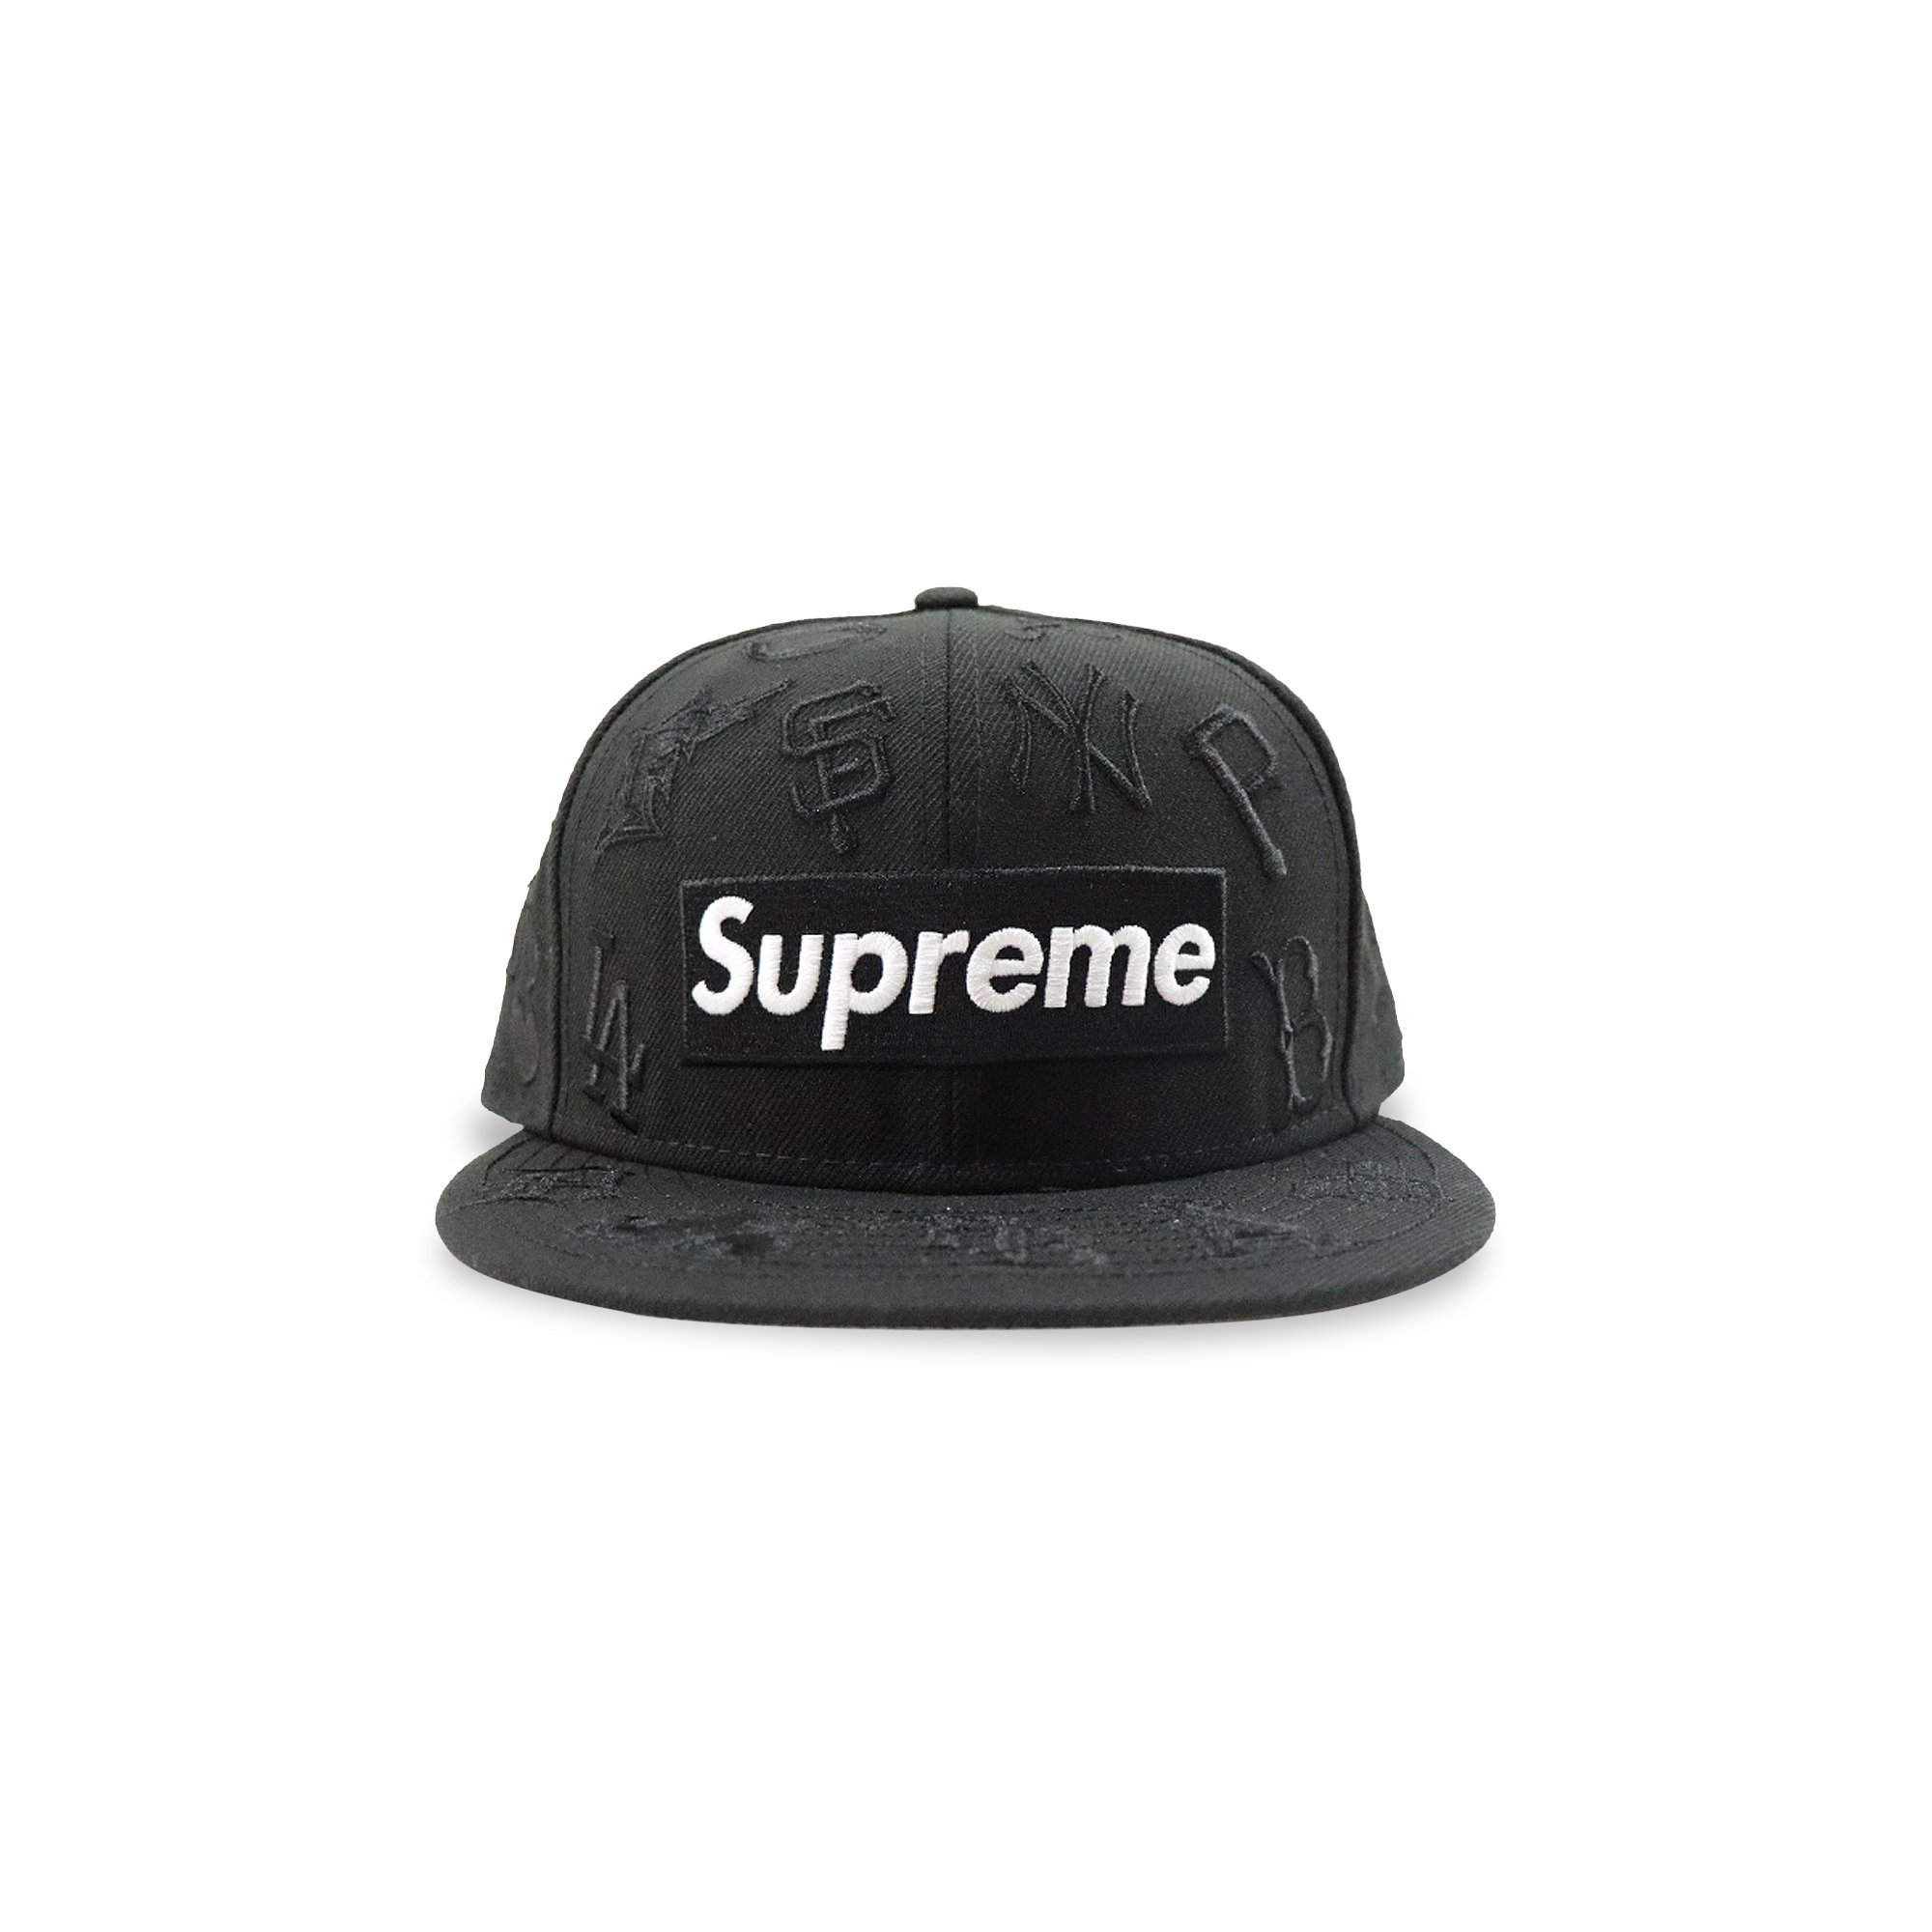 Supreme x MLB x New Era Hat 'Black' | GOAT